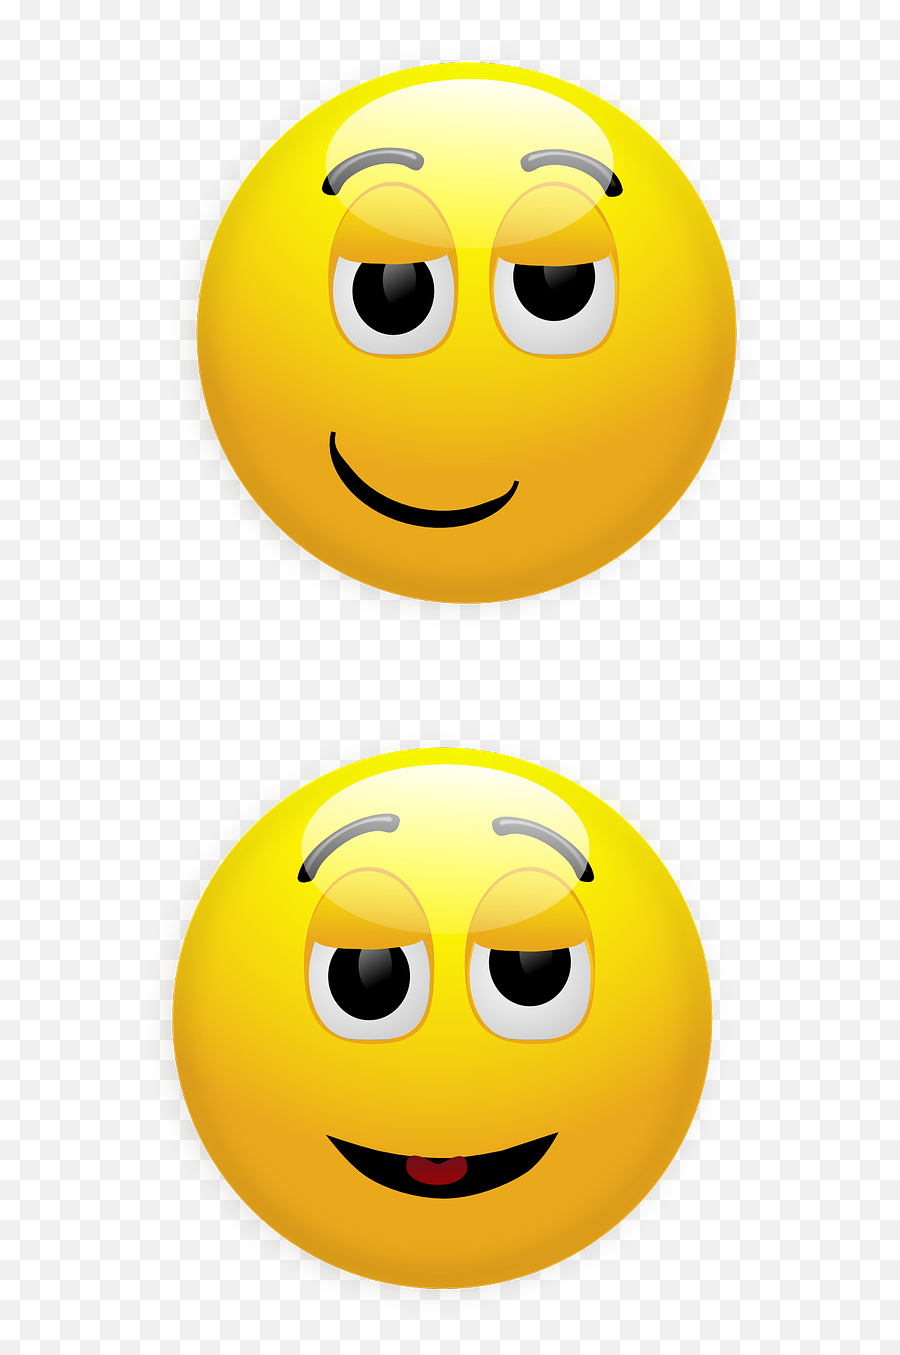 Smiley Smirk Relieved - Emot Lega Emoji,Smirk Facebook Emoticon